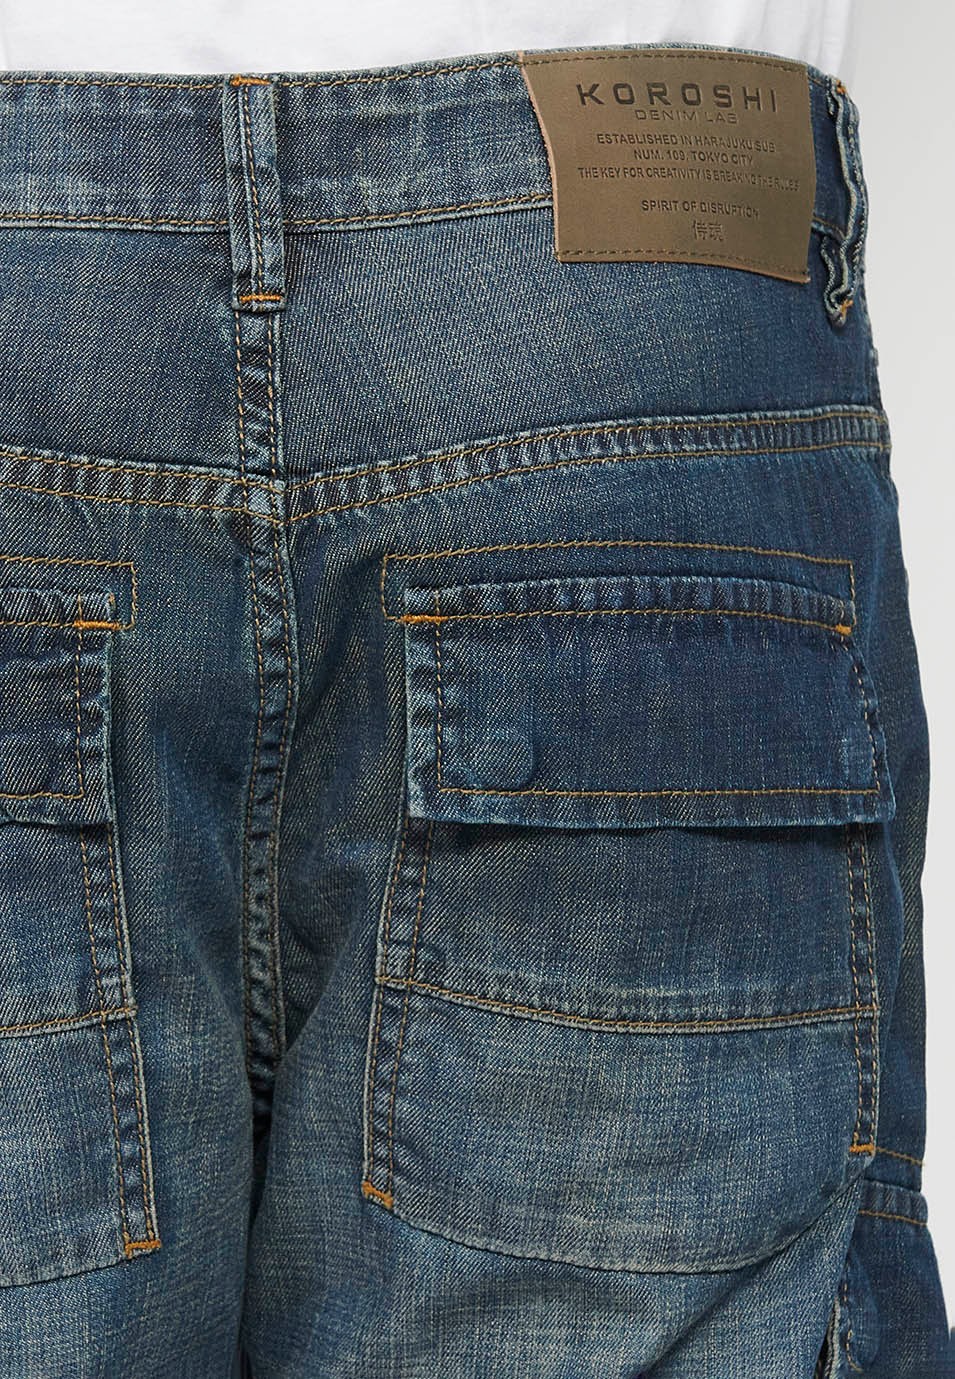 Pantalons càrrec llarg amb Tancament davanter amb cremallera i botó amb Butxaques laterals amb solapa de Color Blau Fosc per a Home 5